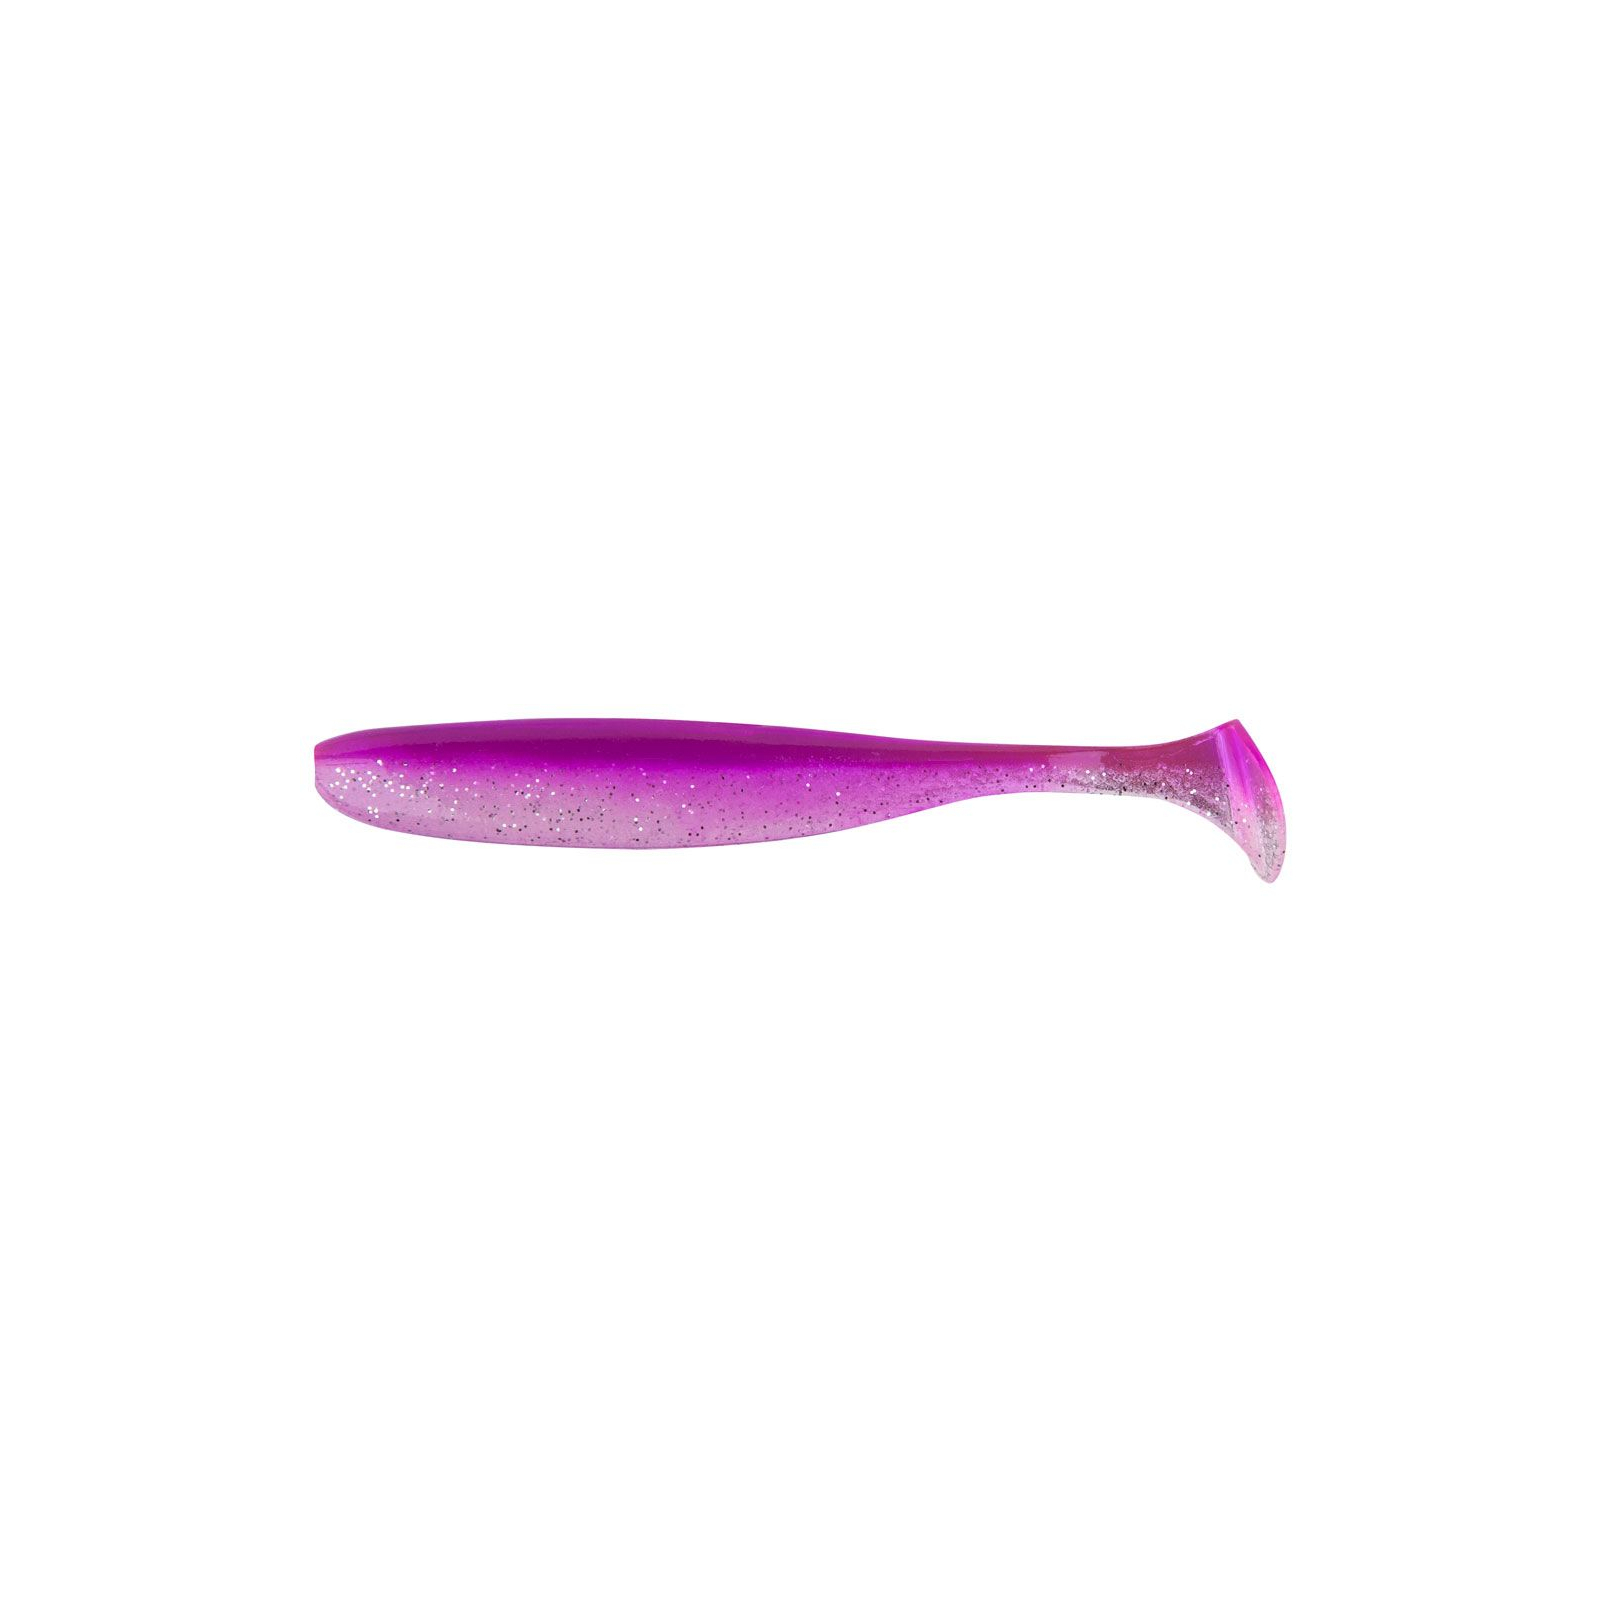 Силікон рибальський Keitech Easy Shiner 2" (12 шт/упак) ц:pal#14 glamorous pink (1551.07.71)